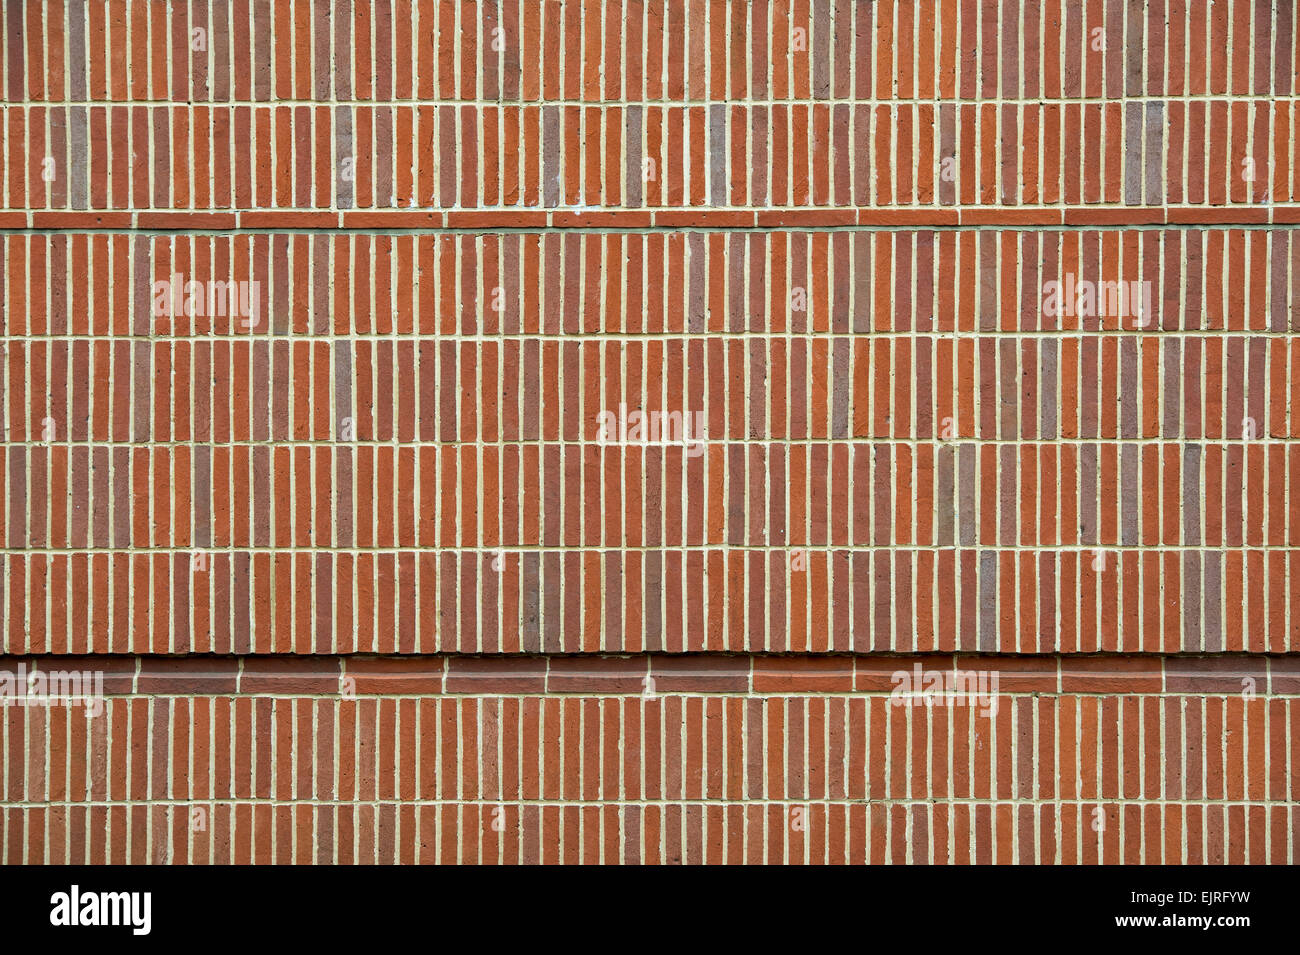 Brick wall facade, Keble College  Oxford, England Stock Photo